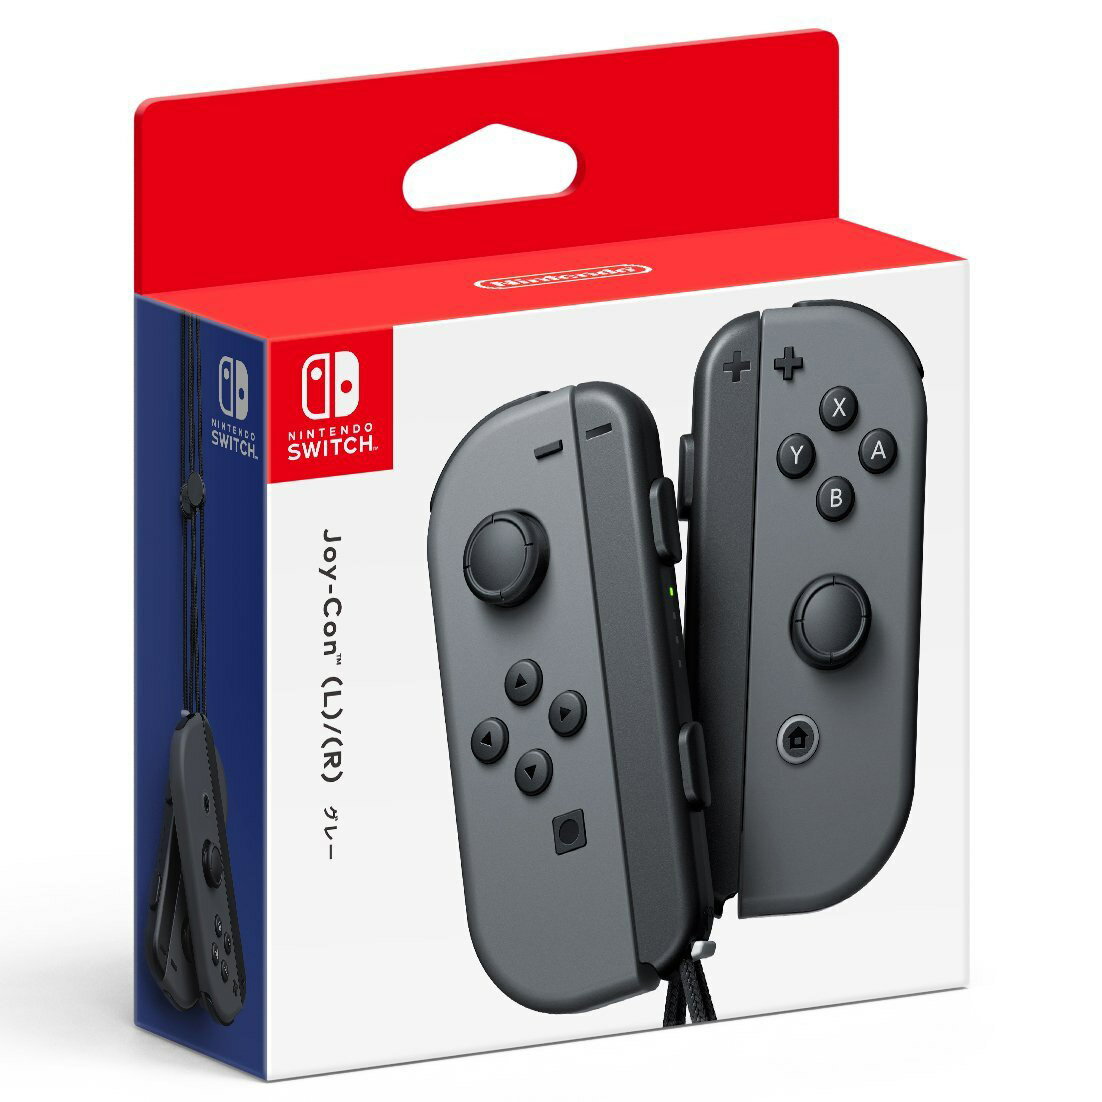 現貨供應中  [普遍級]  Nintendo Switch Joy-Con 控制器組(黑)